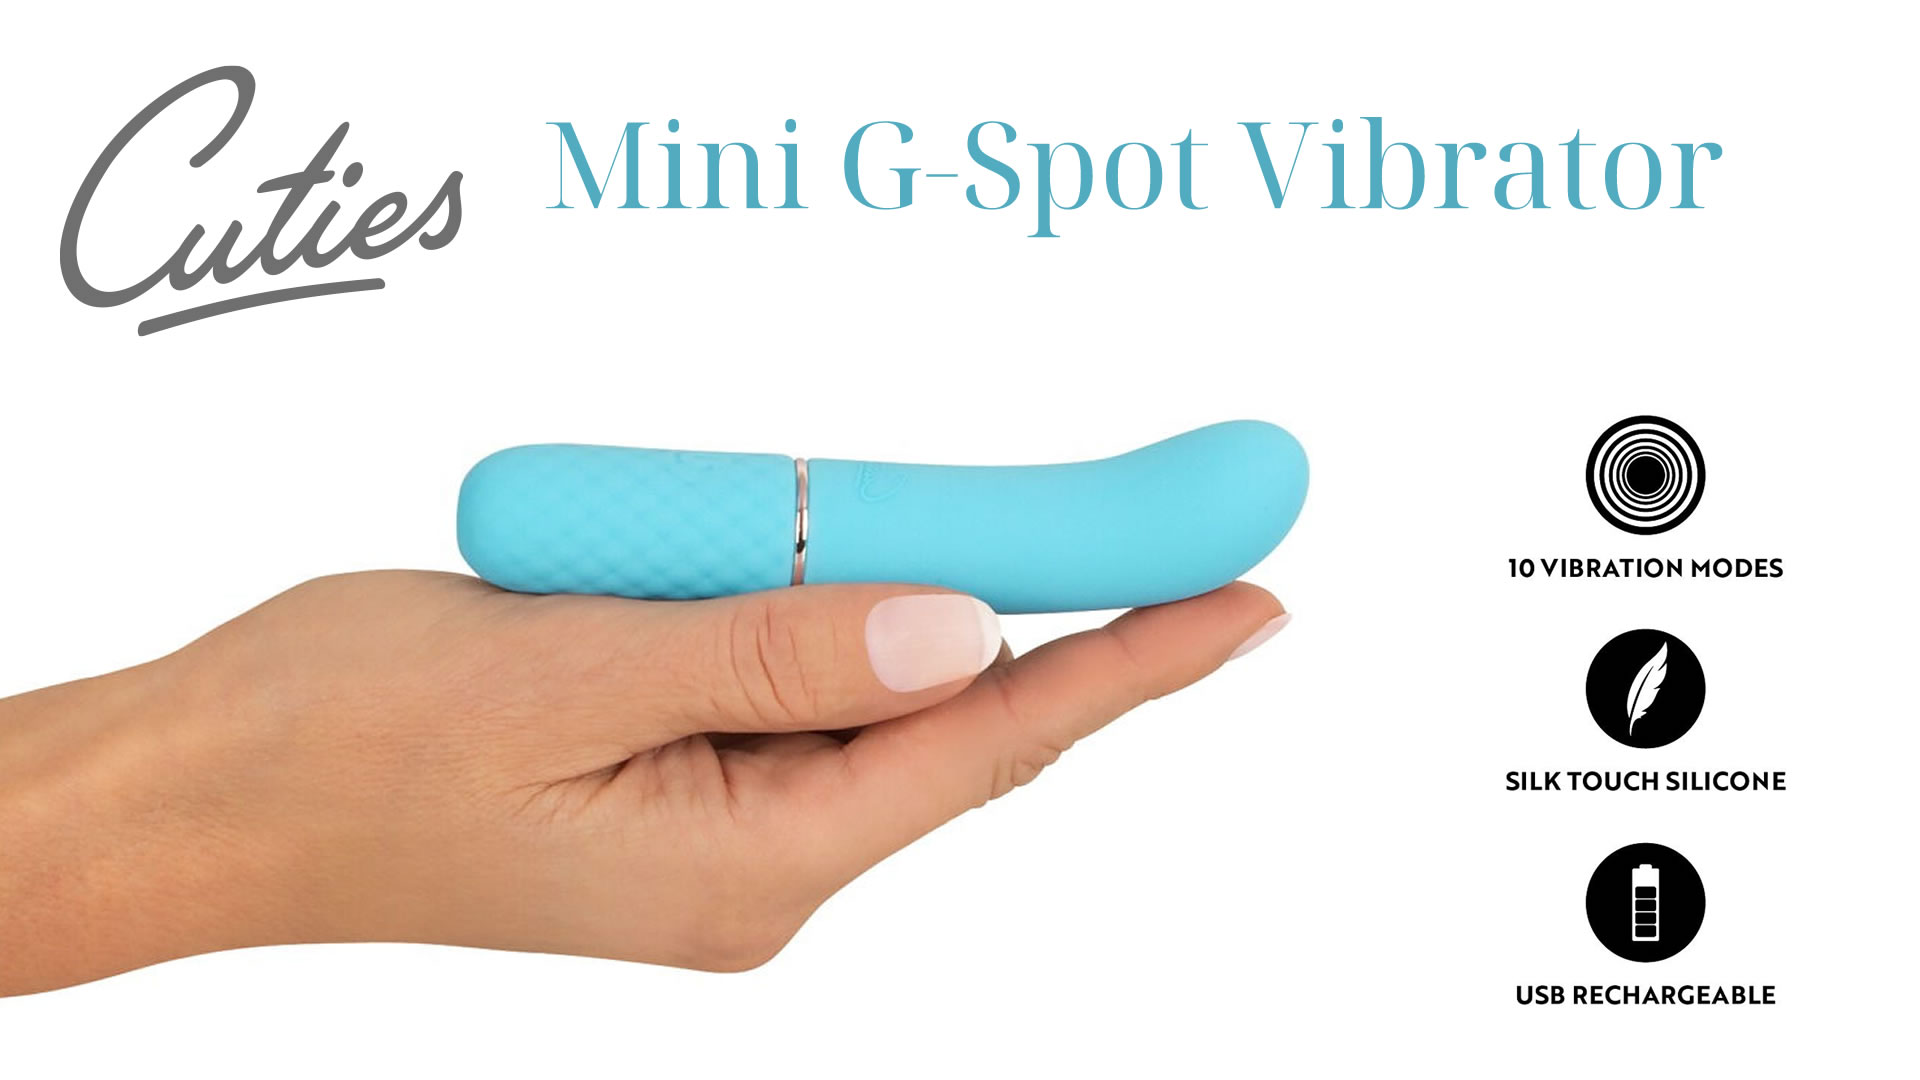 Cuties Mini G-Punkt Vibrator